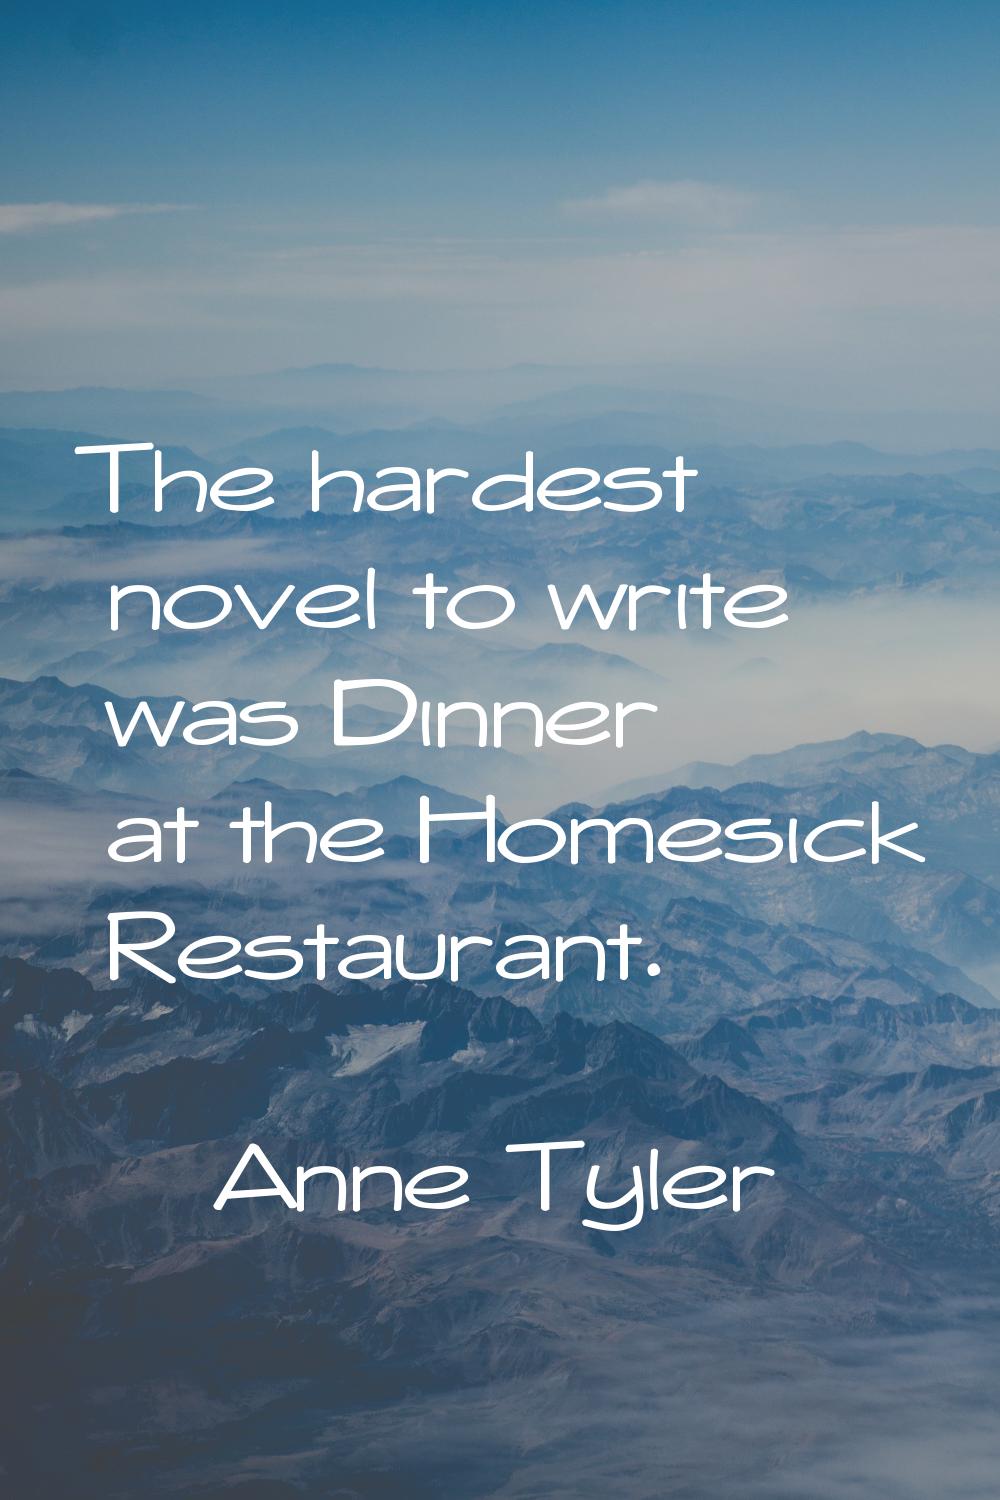 The hardest novel to write was Dinner at the Homesick Restaurant.